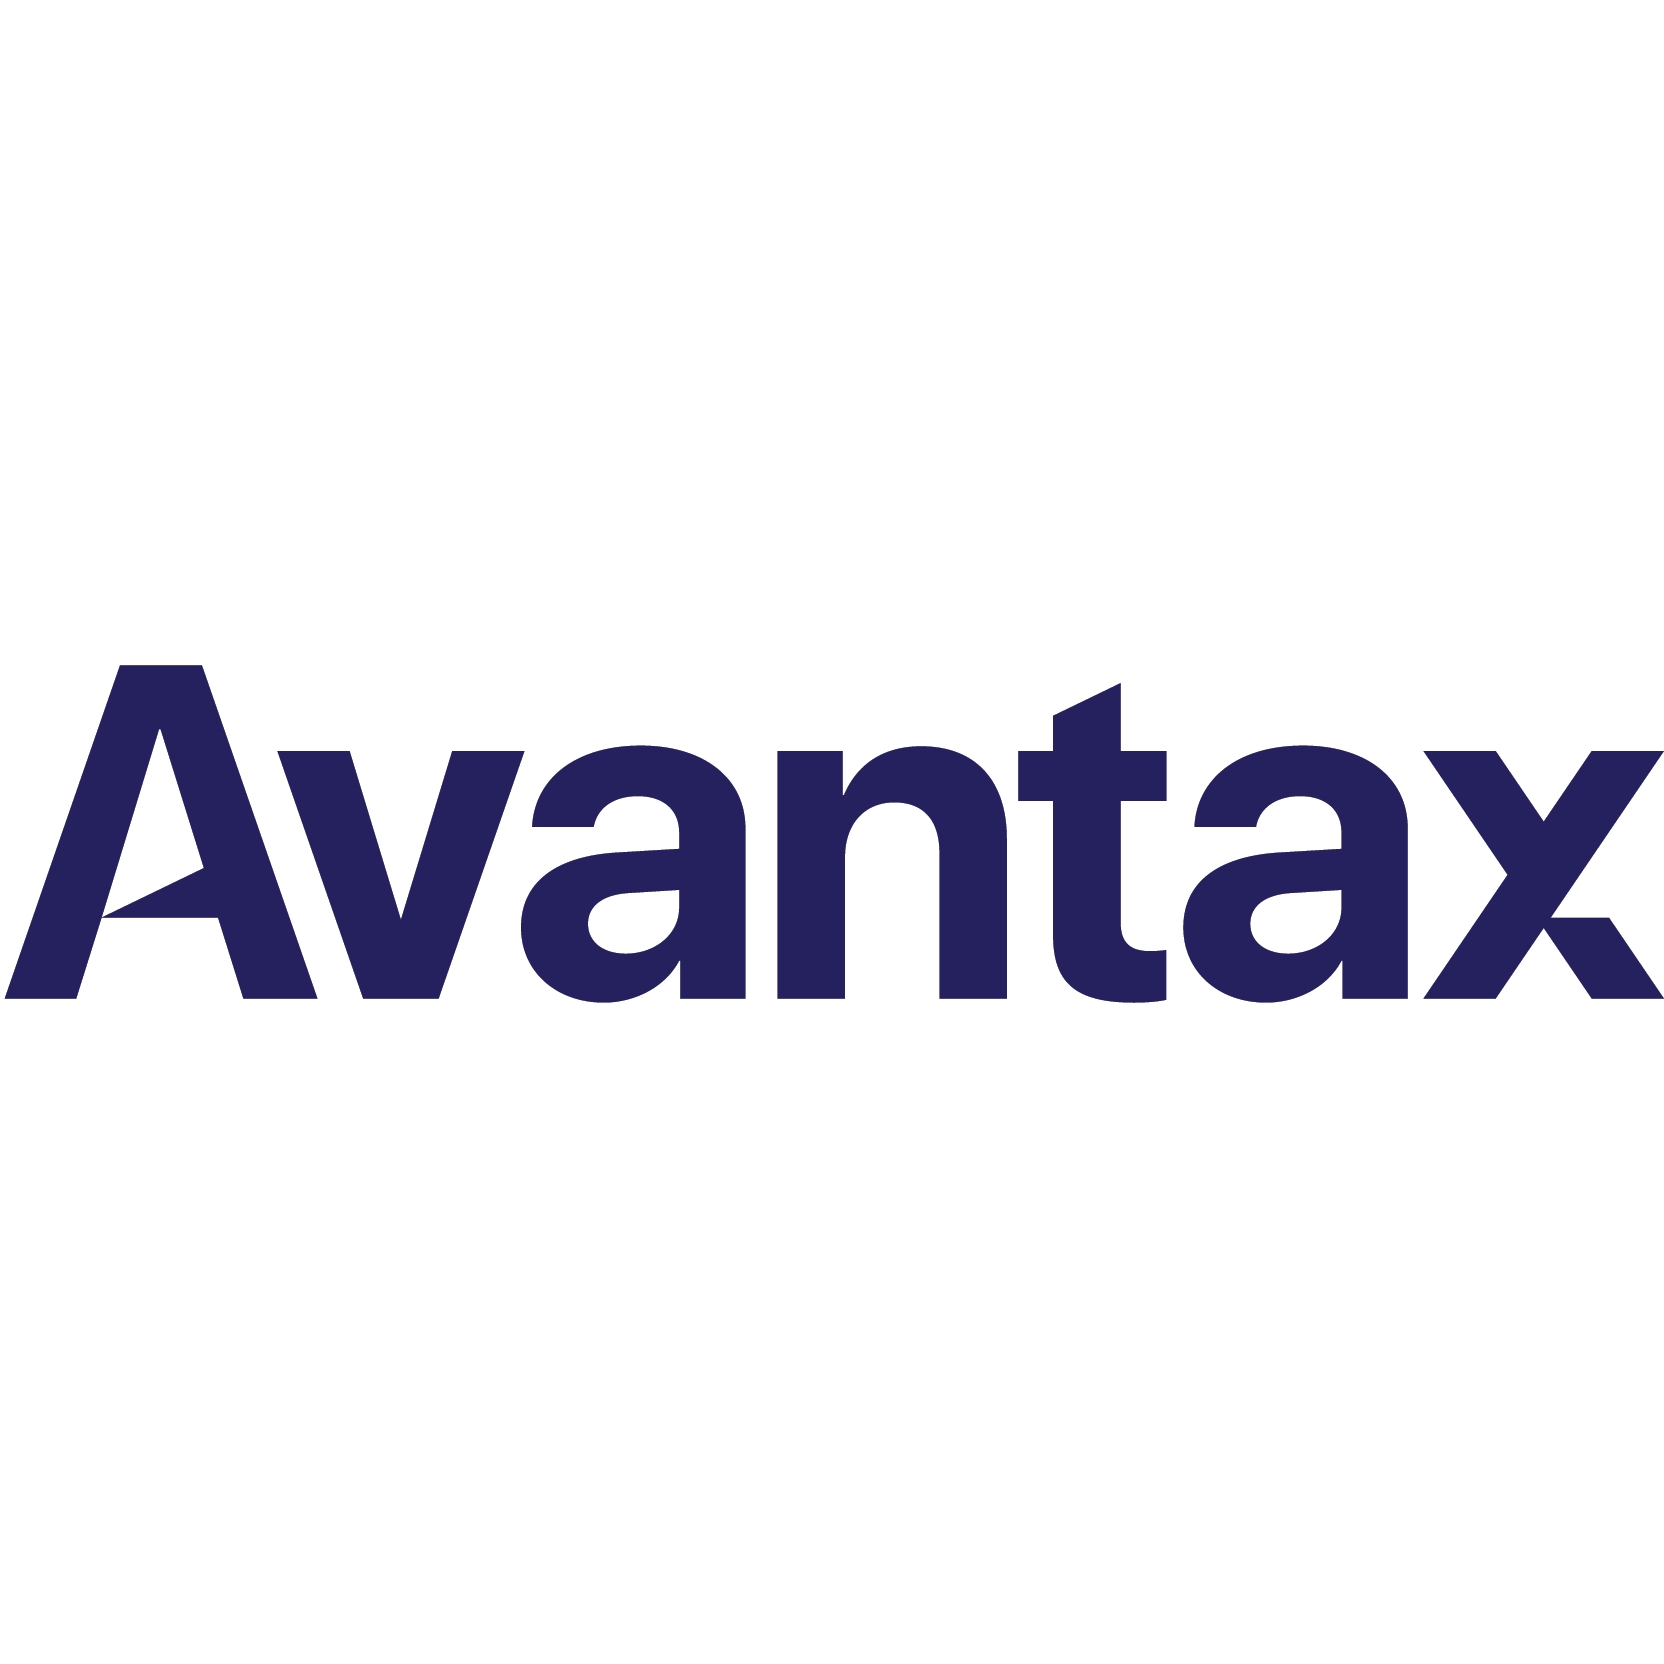 Avantax Acquires GA Investment Management Adding